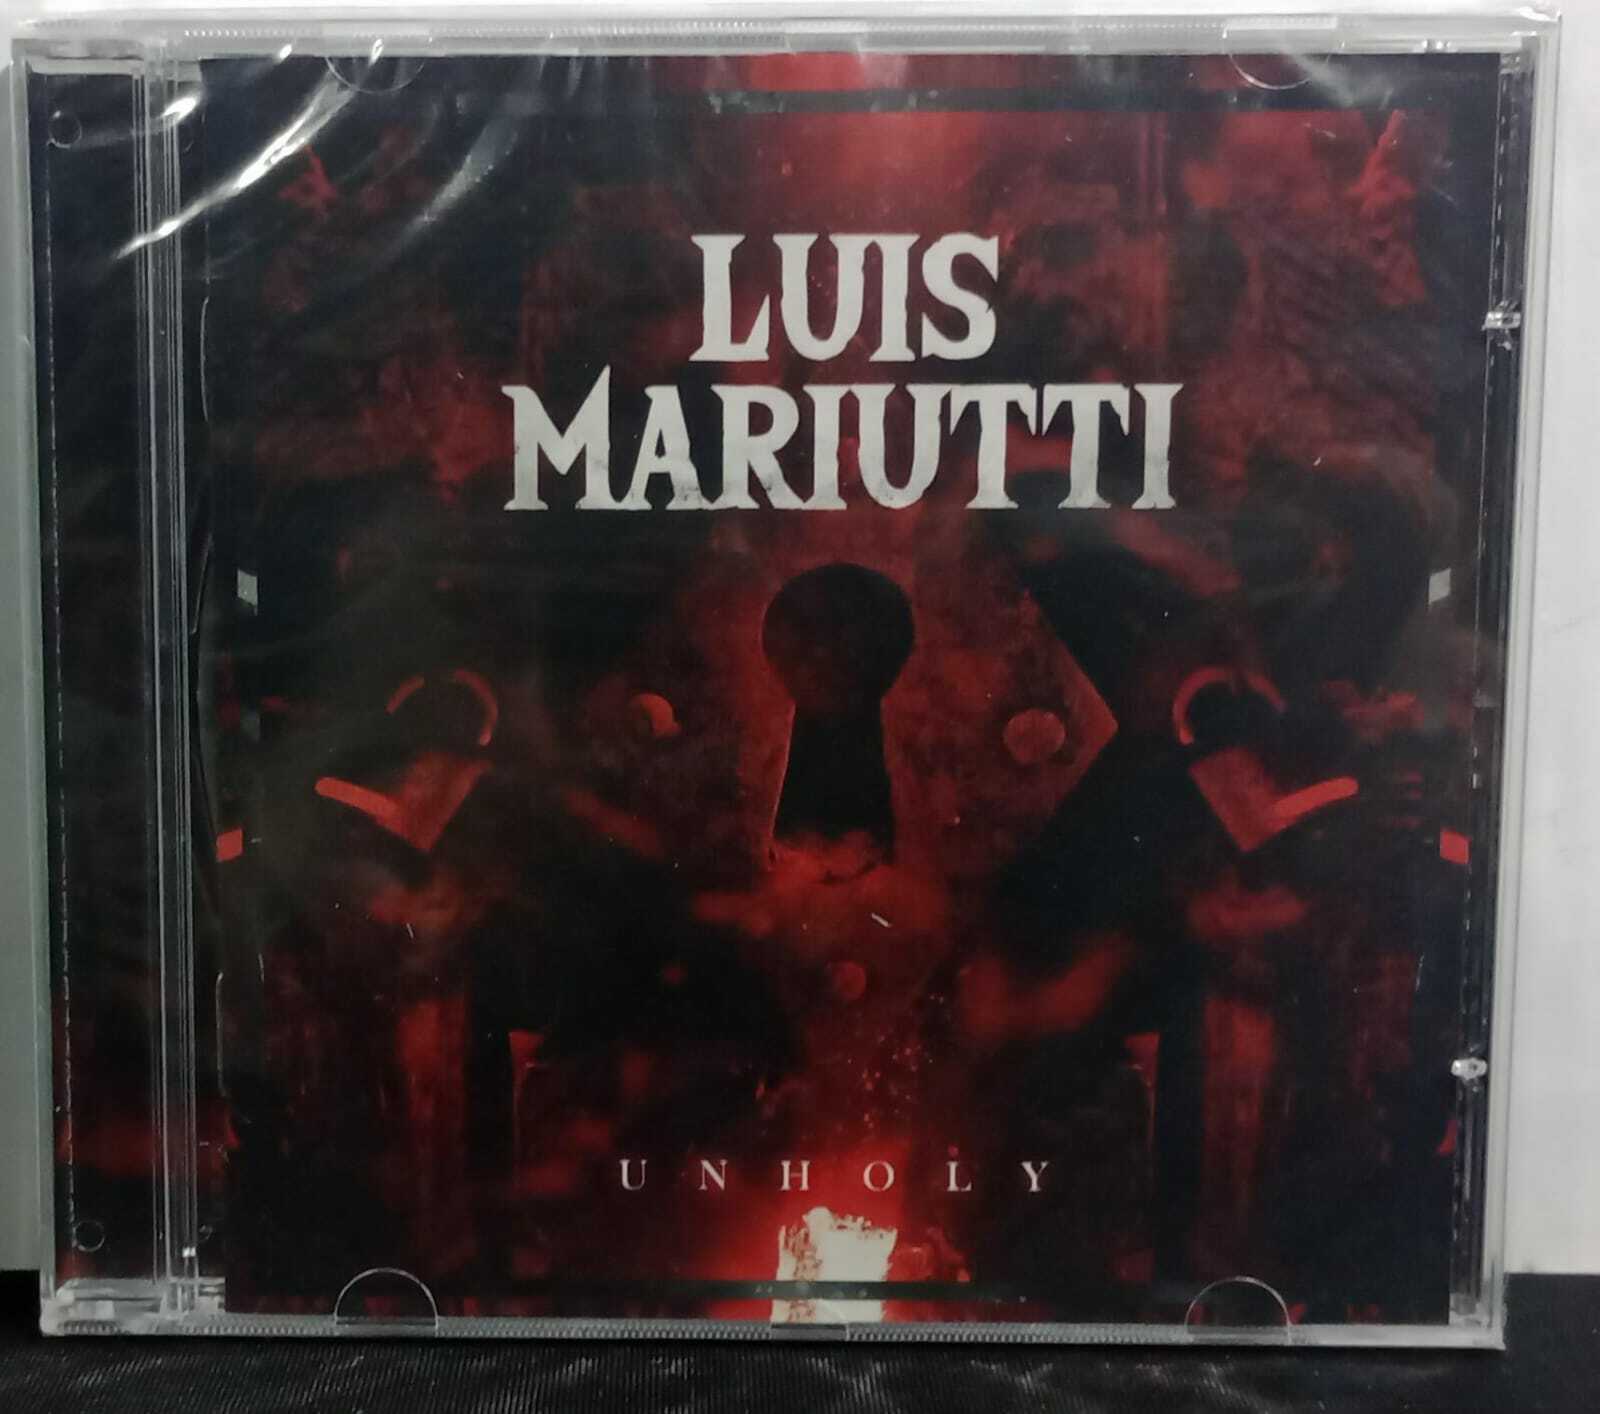 CD - Luis Mariutti - Unholy (Lacrado)